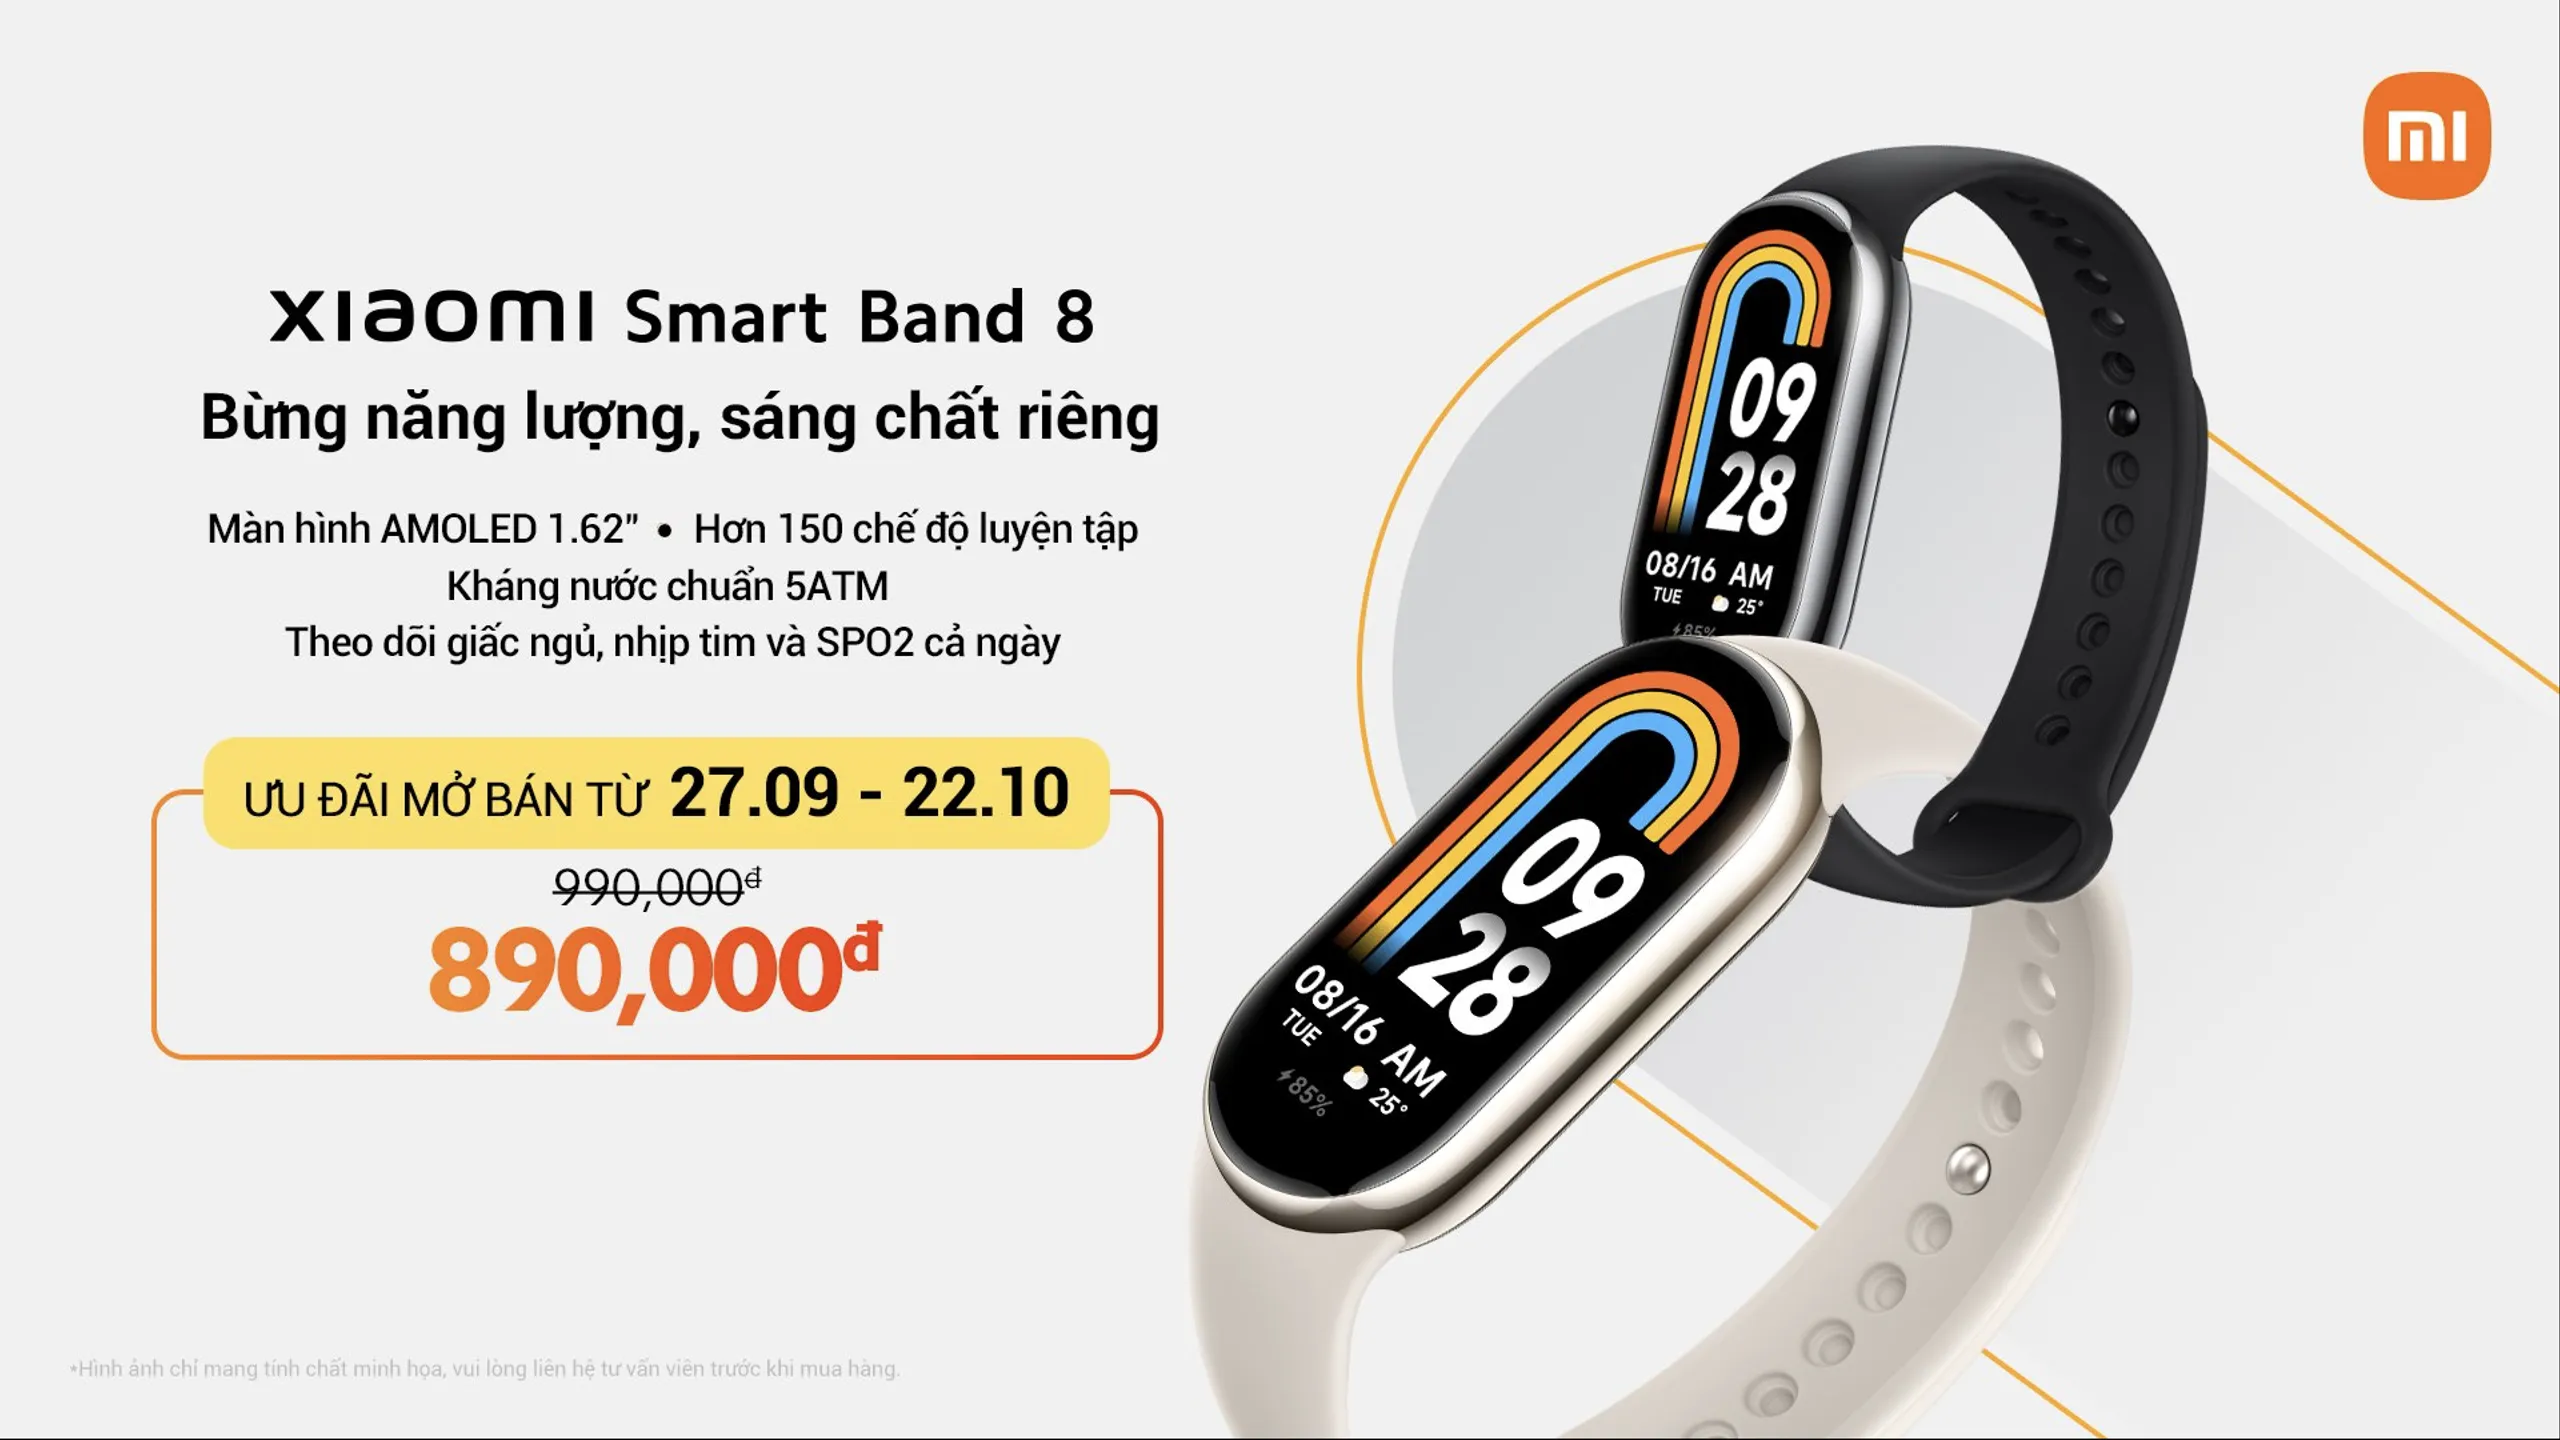 Xiaomi Smart Band 8 chính thức ra mắt tại Việt Nam giá 990,000 VND